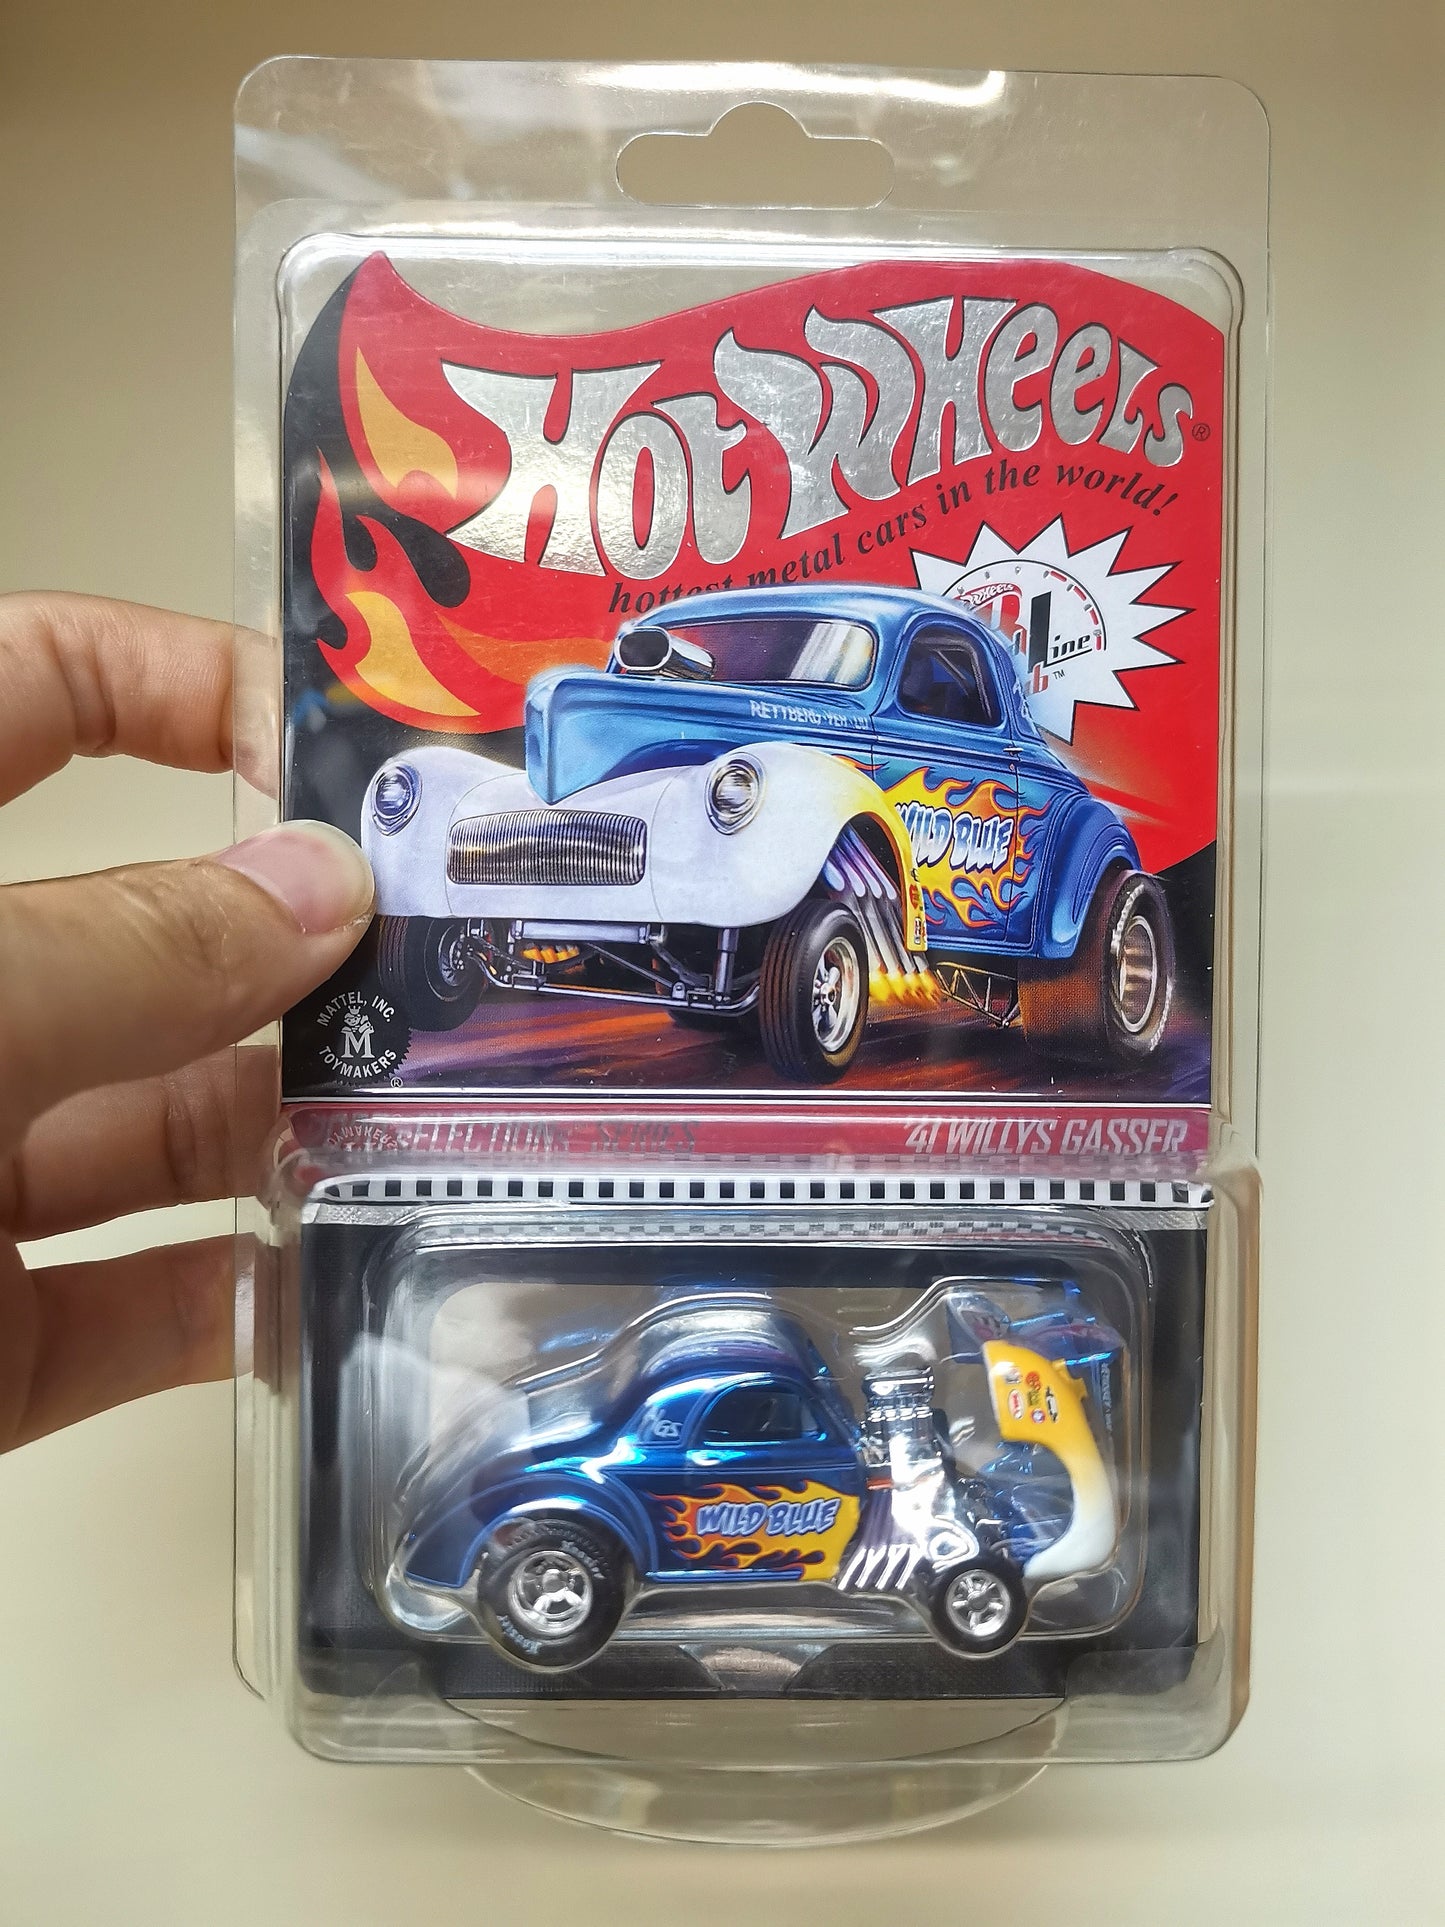 Hot Wheels RLC 41' Willys Gasser Wild Blue